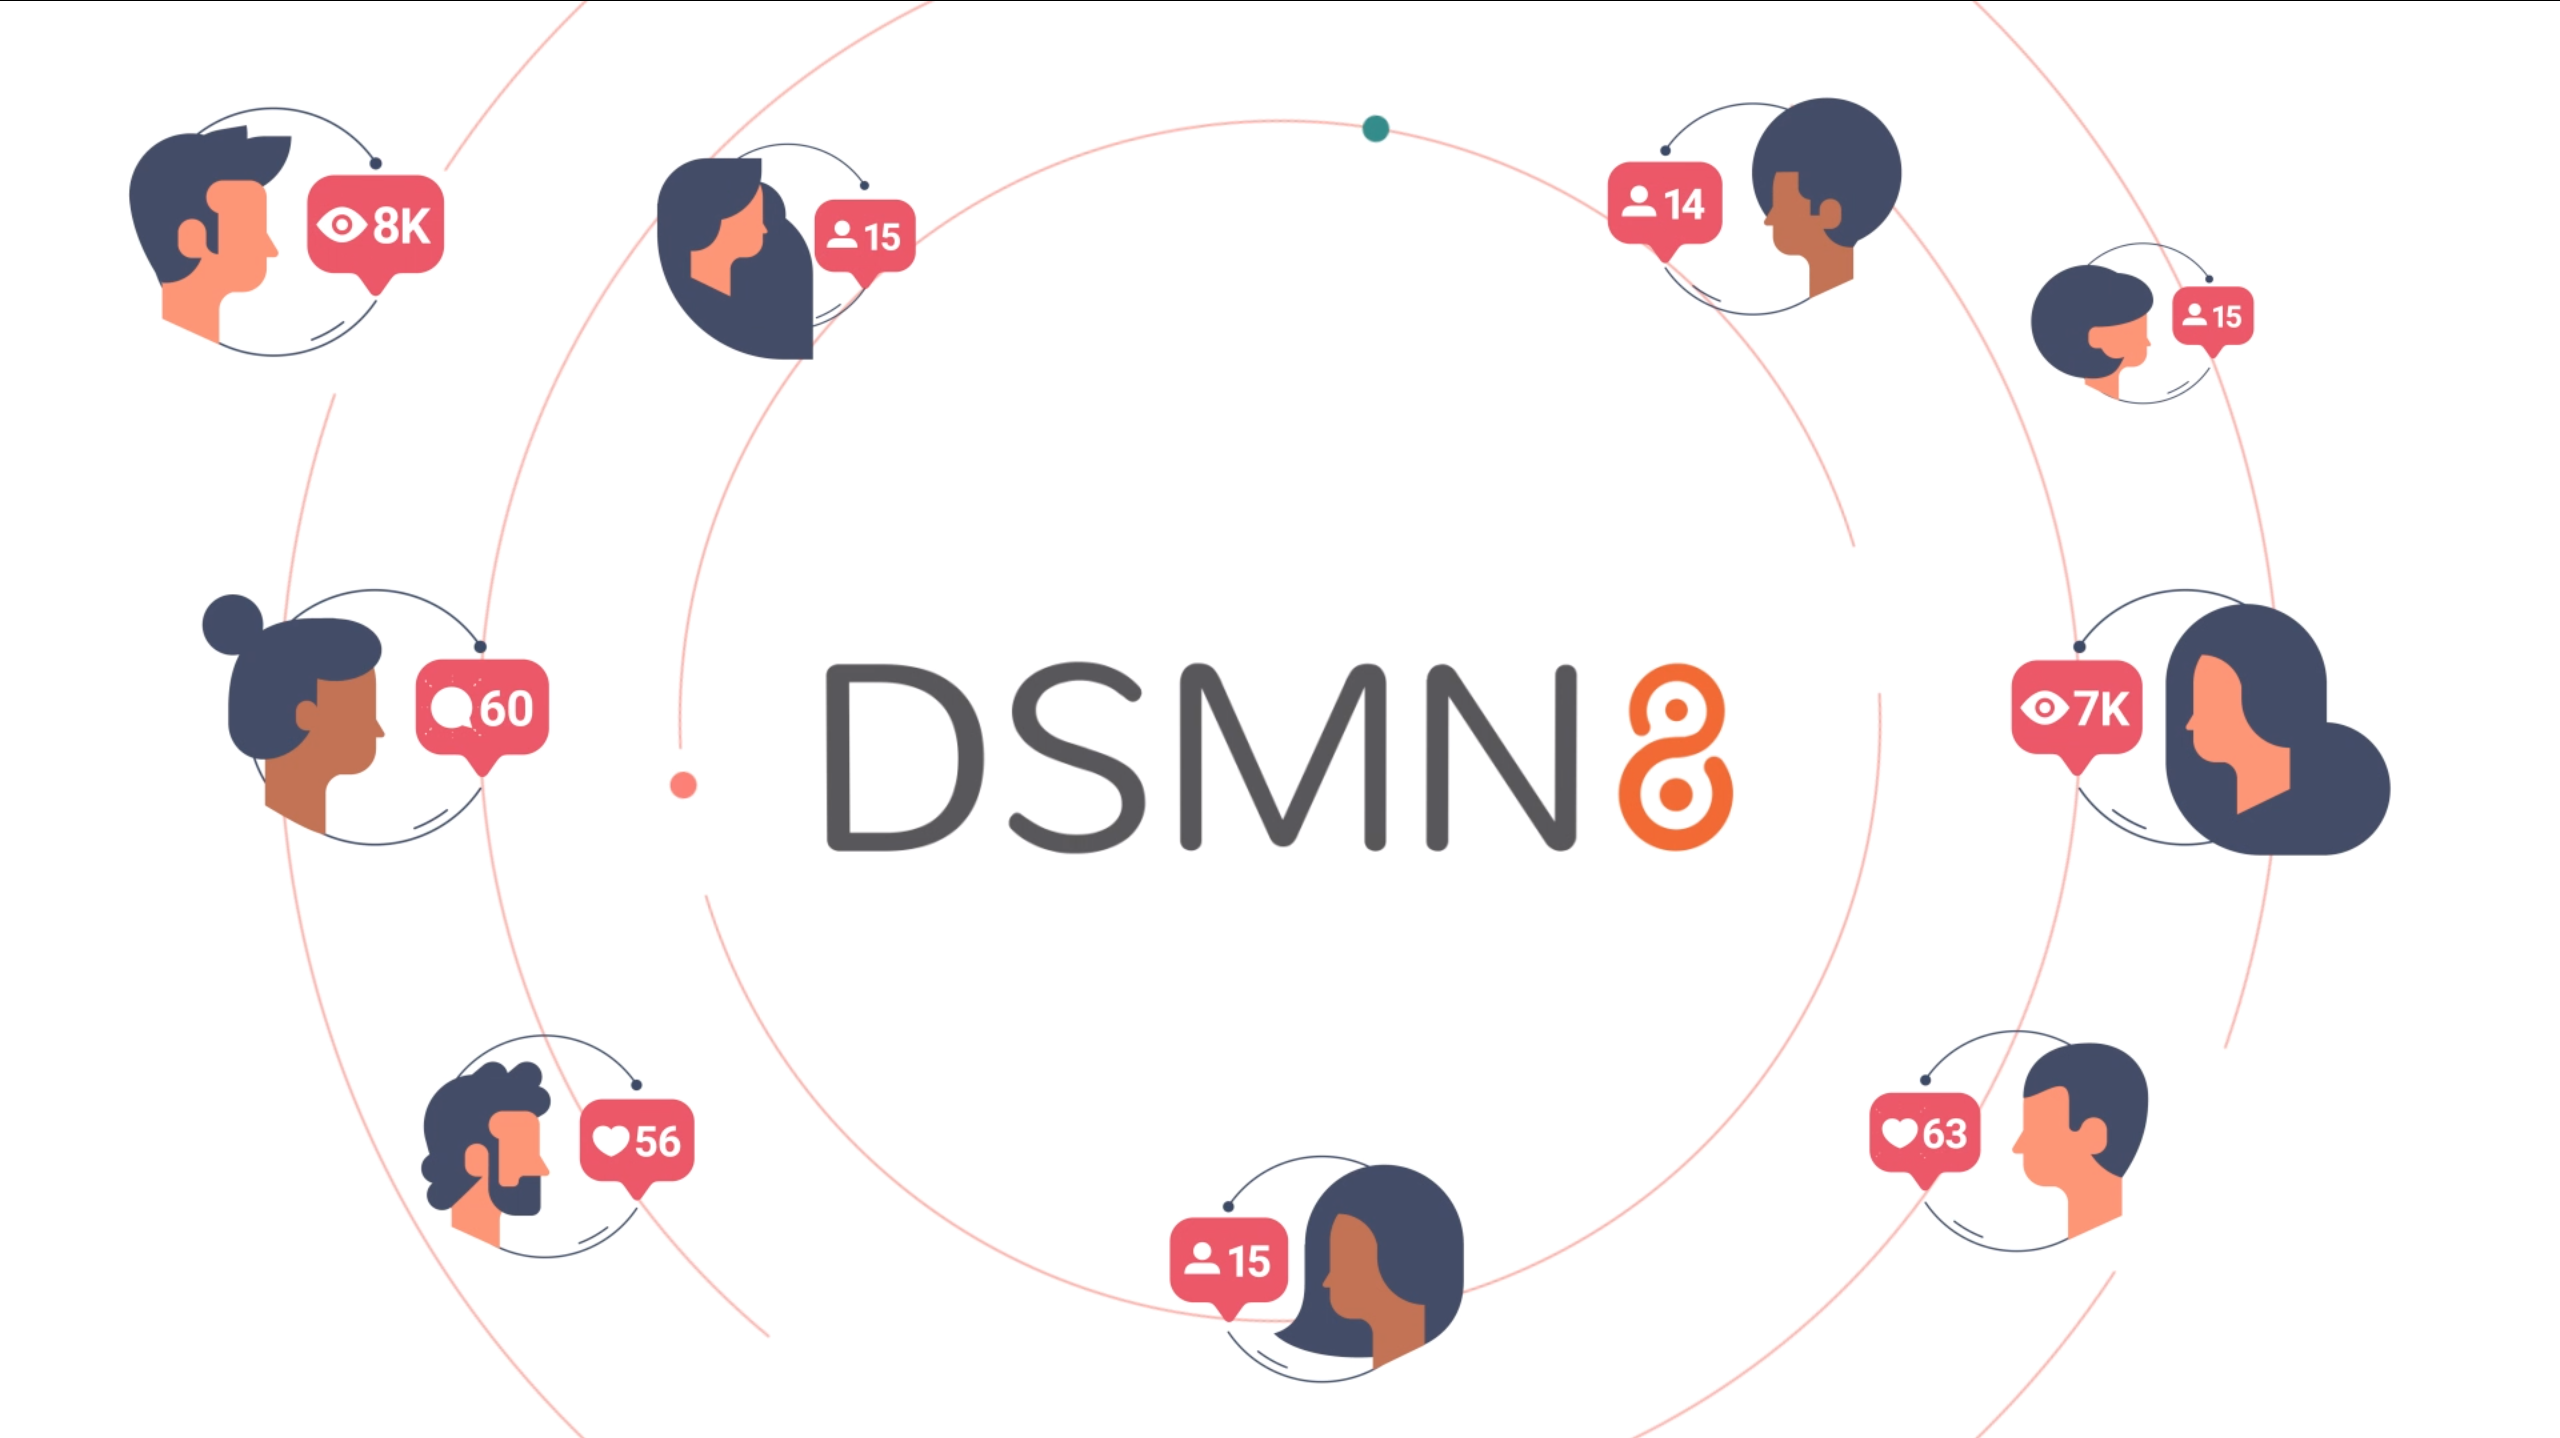 DSMN8 - The Employee Influencer Platform